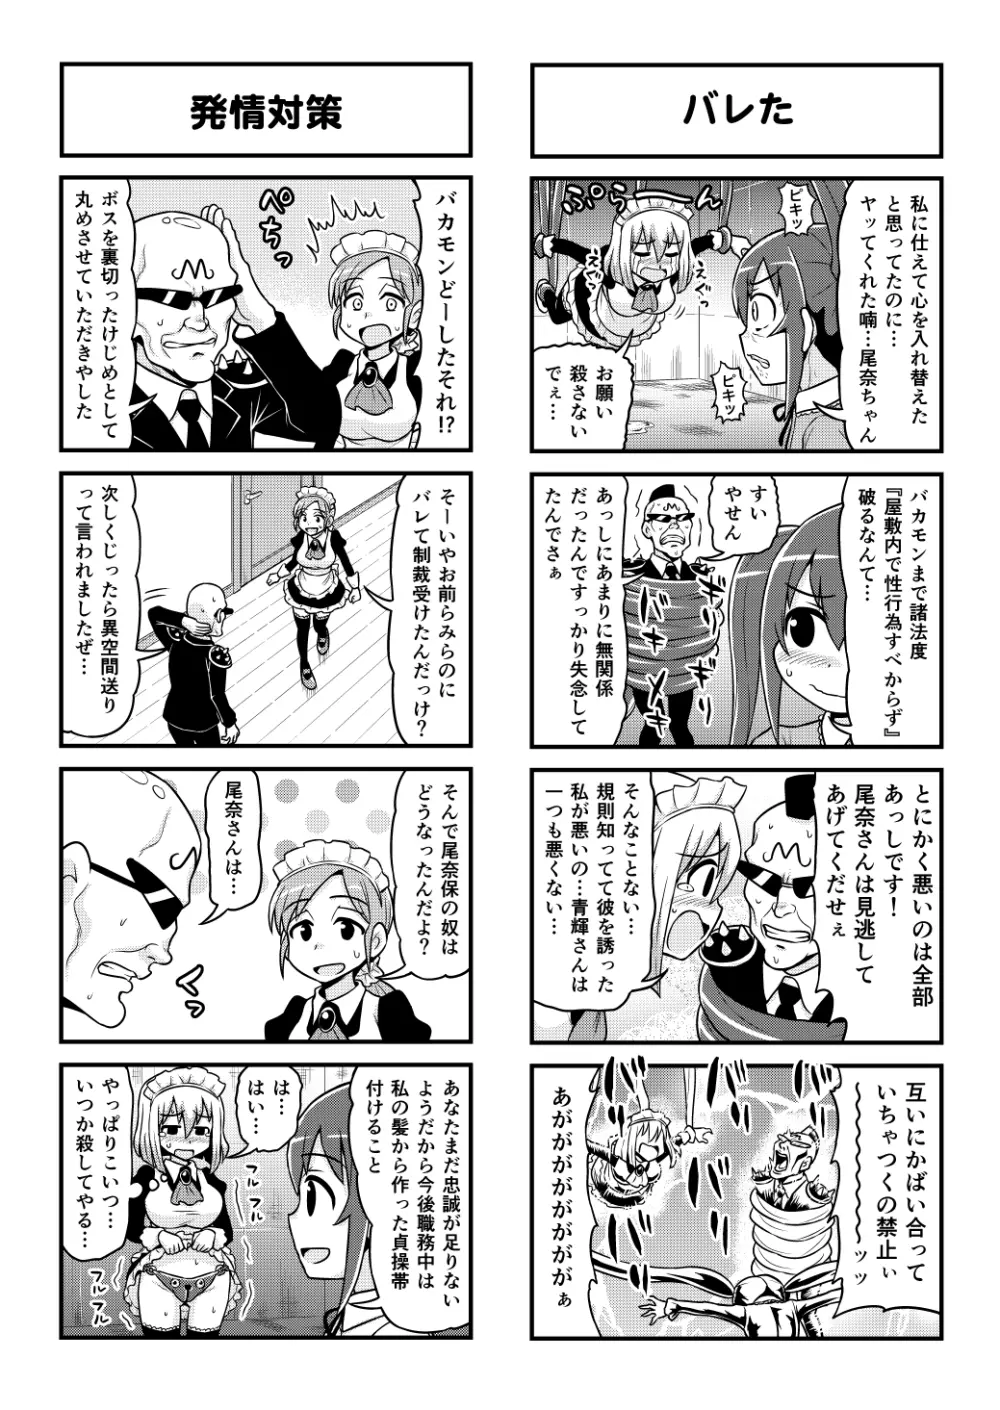 のんきBOY 1-52 - page412